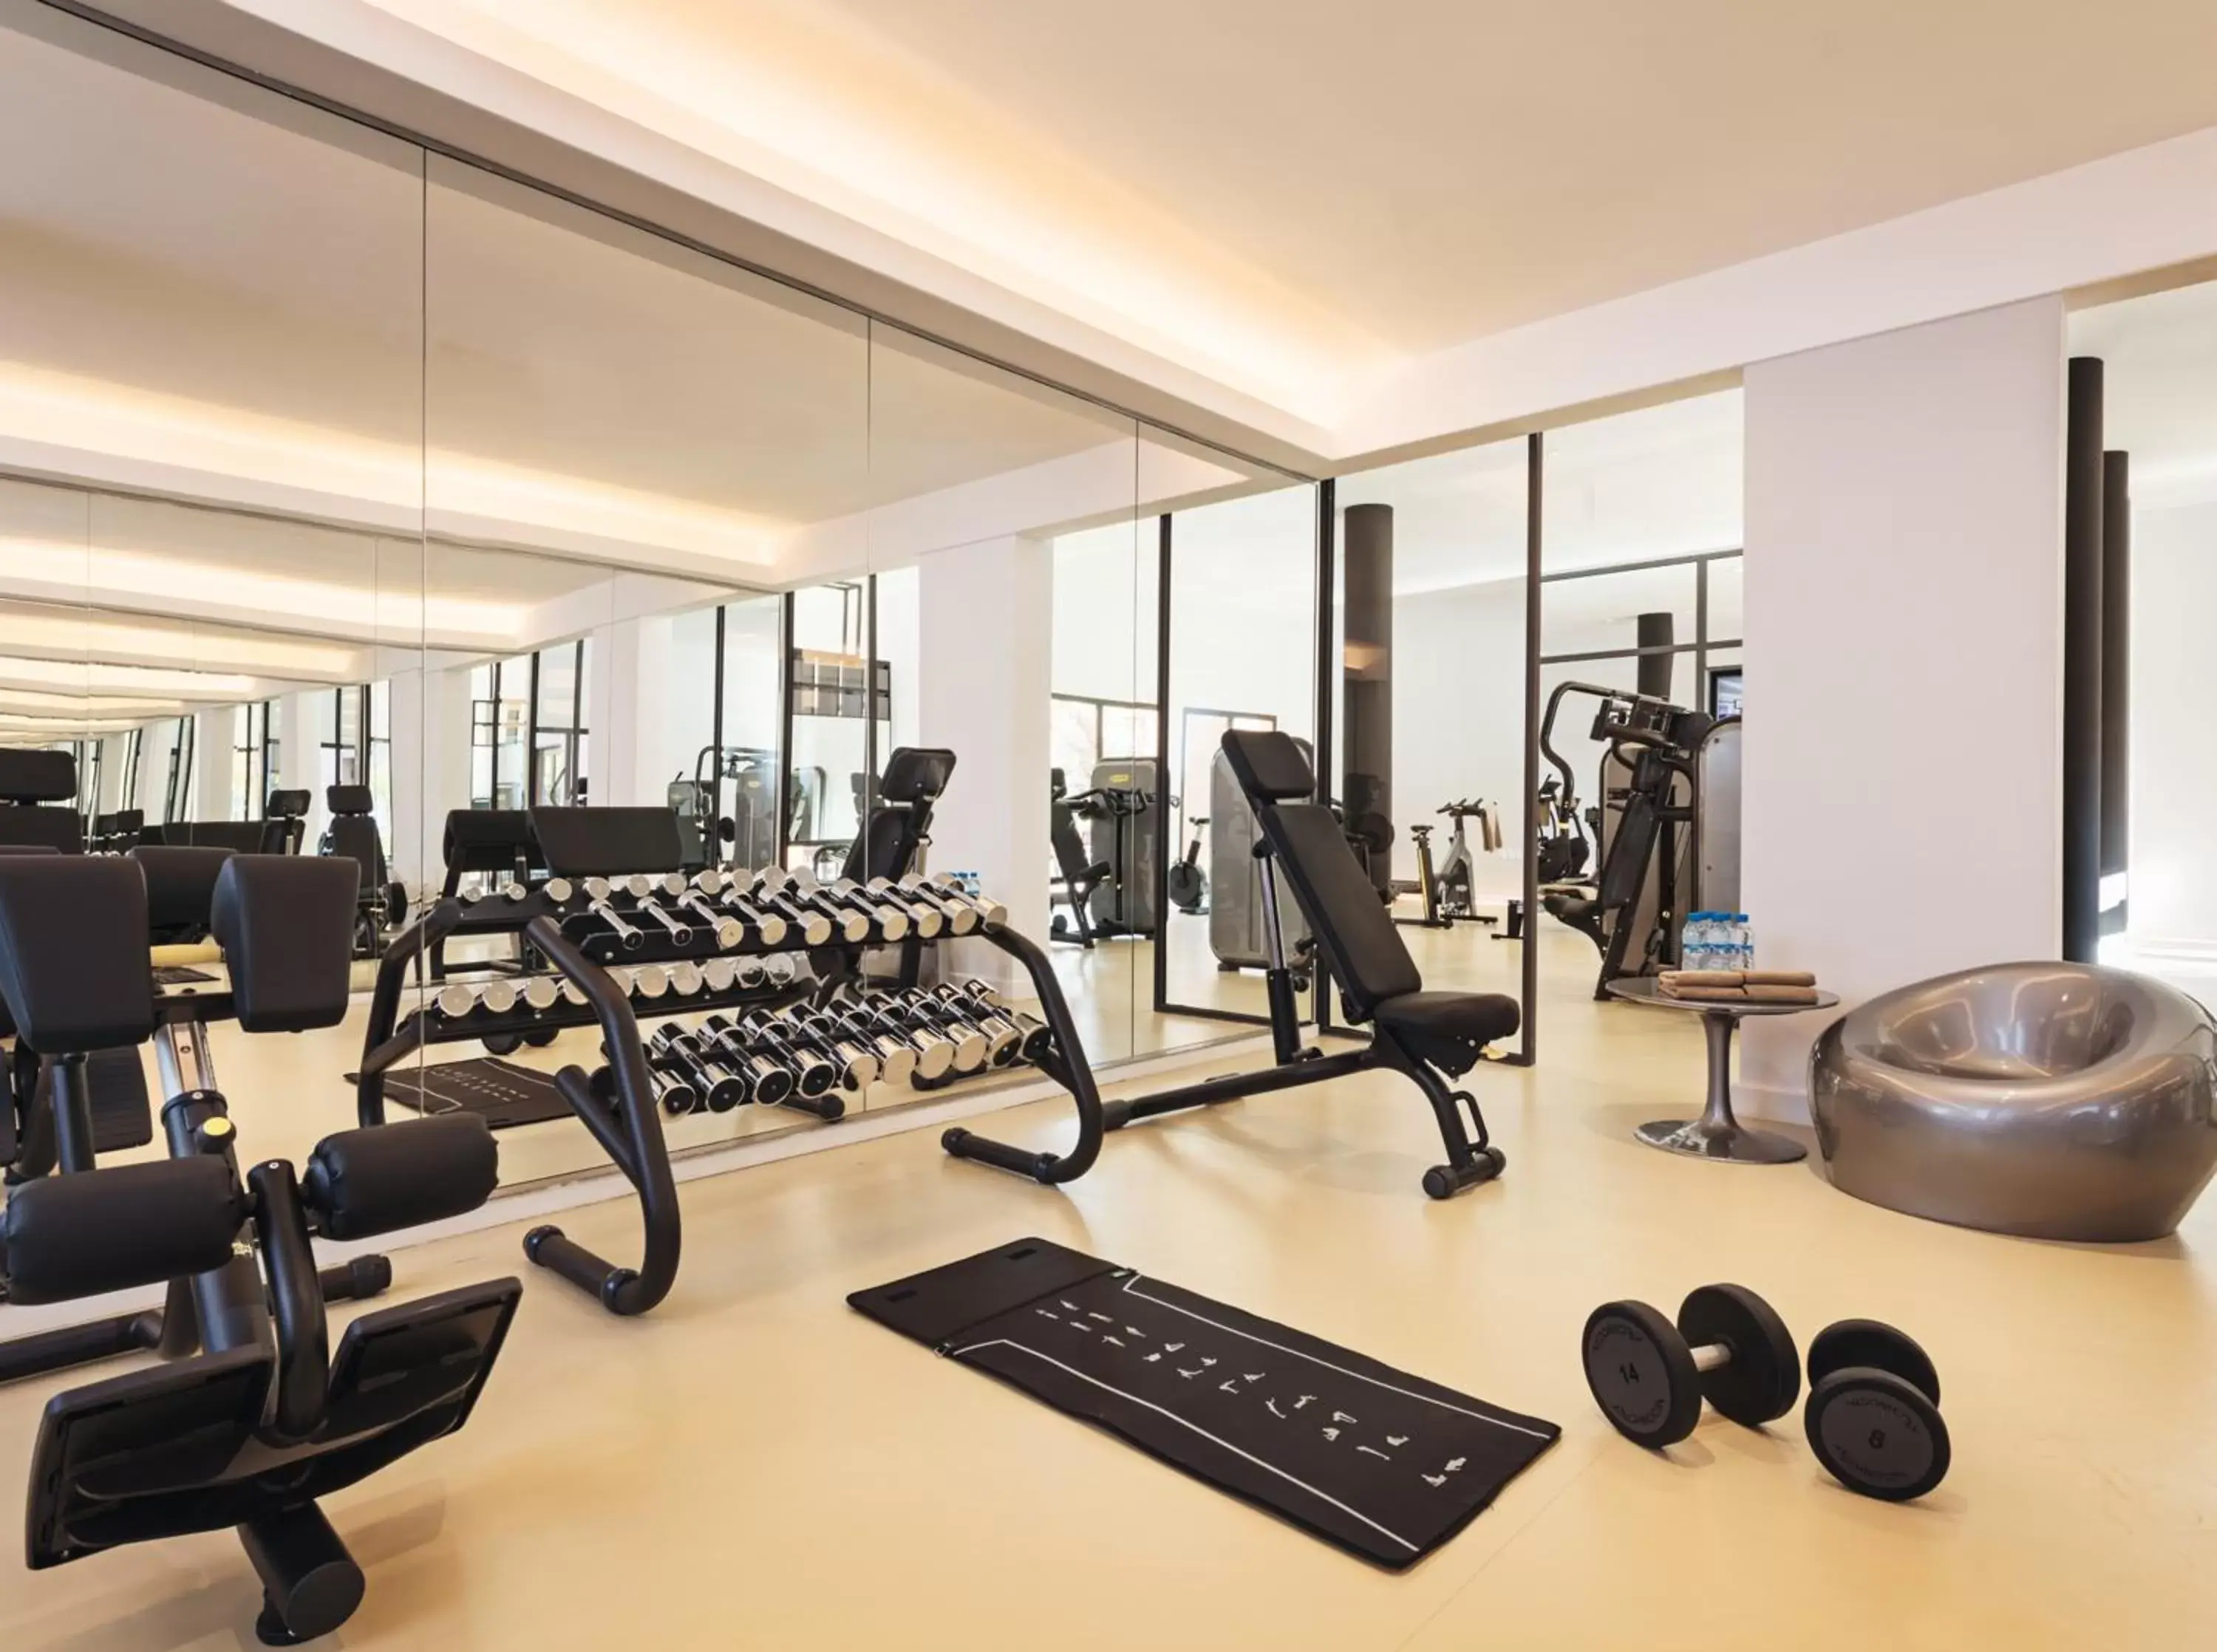 Fitness centre/facilities, Fitness Center/Facilities in Mövenpick Hotel City Star Jeddah